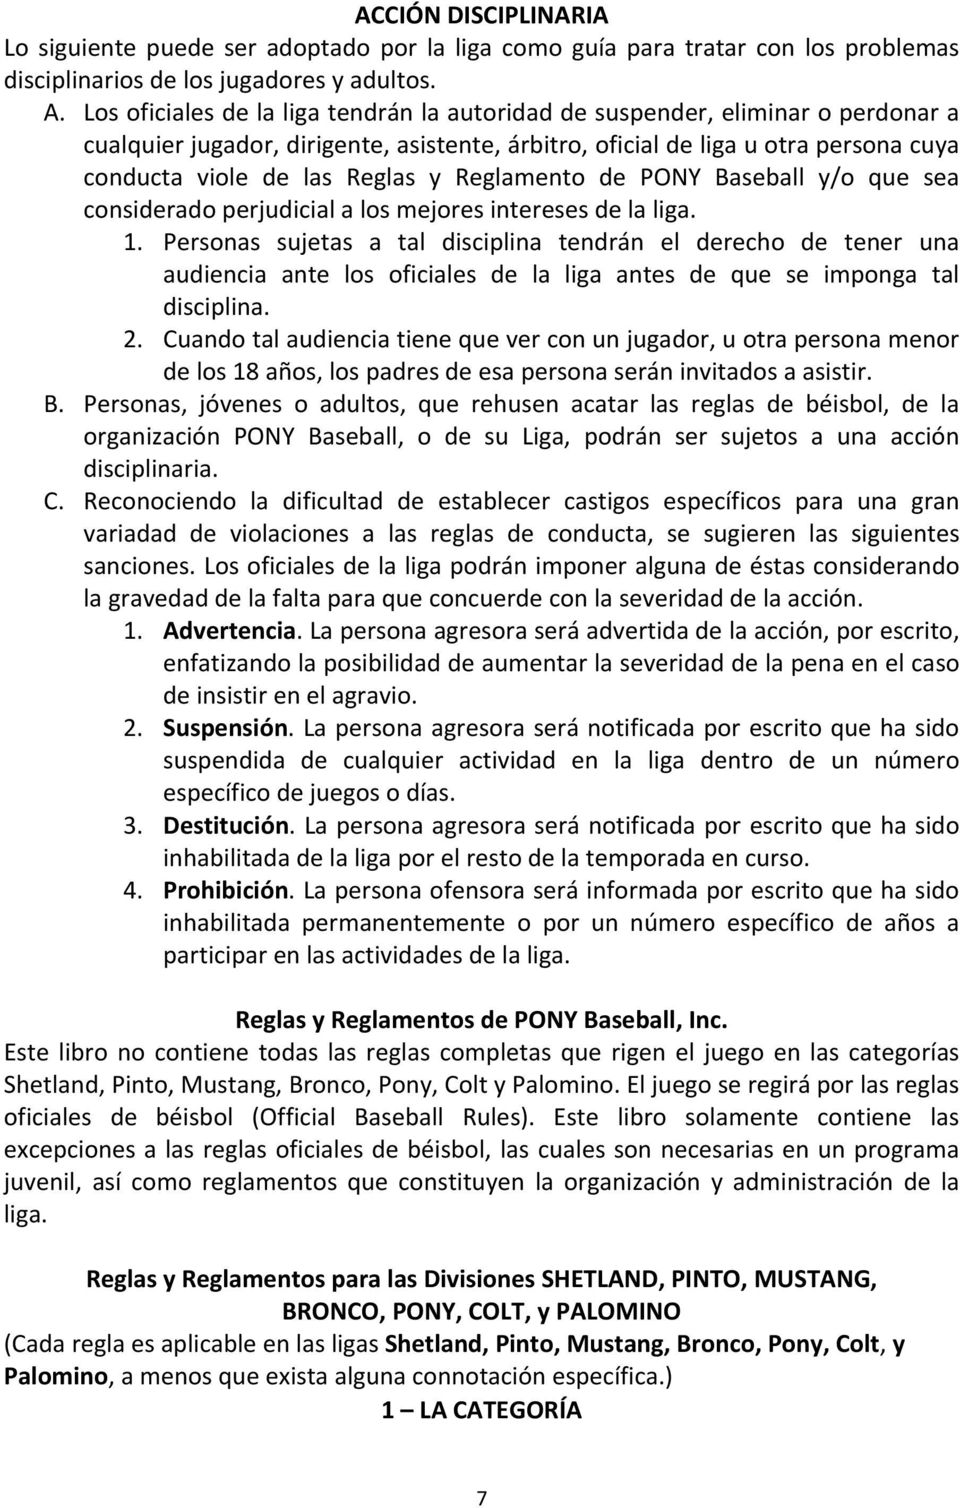 Reglamento de PONY Baseball y/o que sea considerado perjudicial a los mejores intereses de la liga. 1.